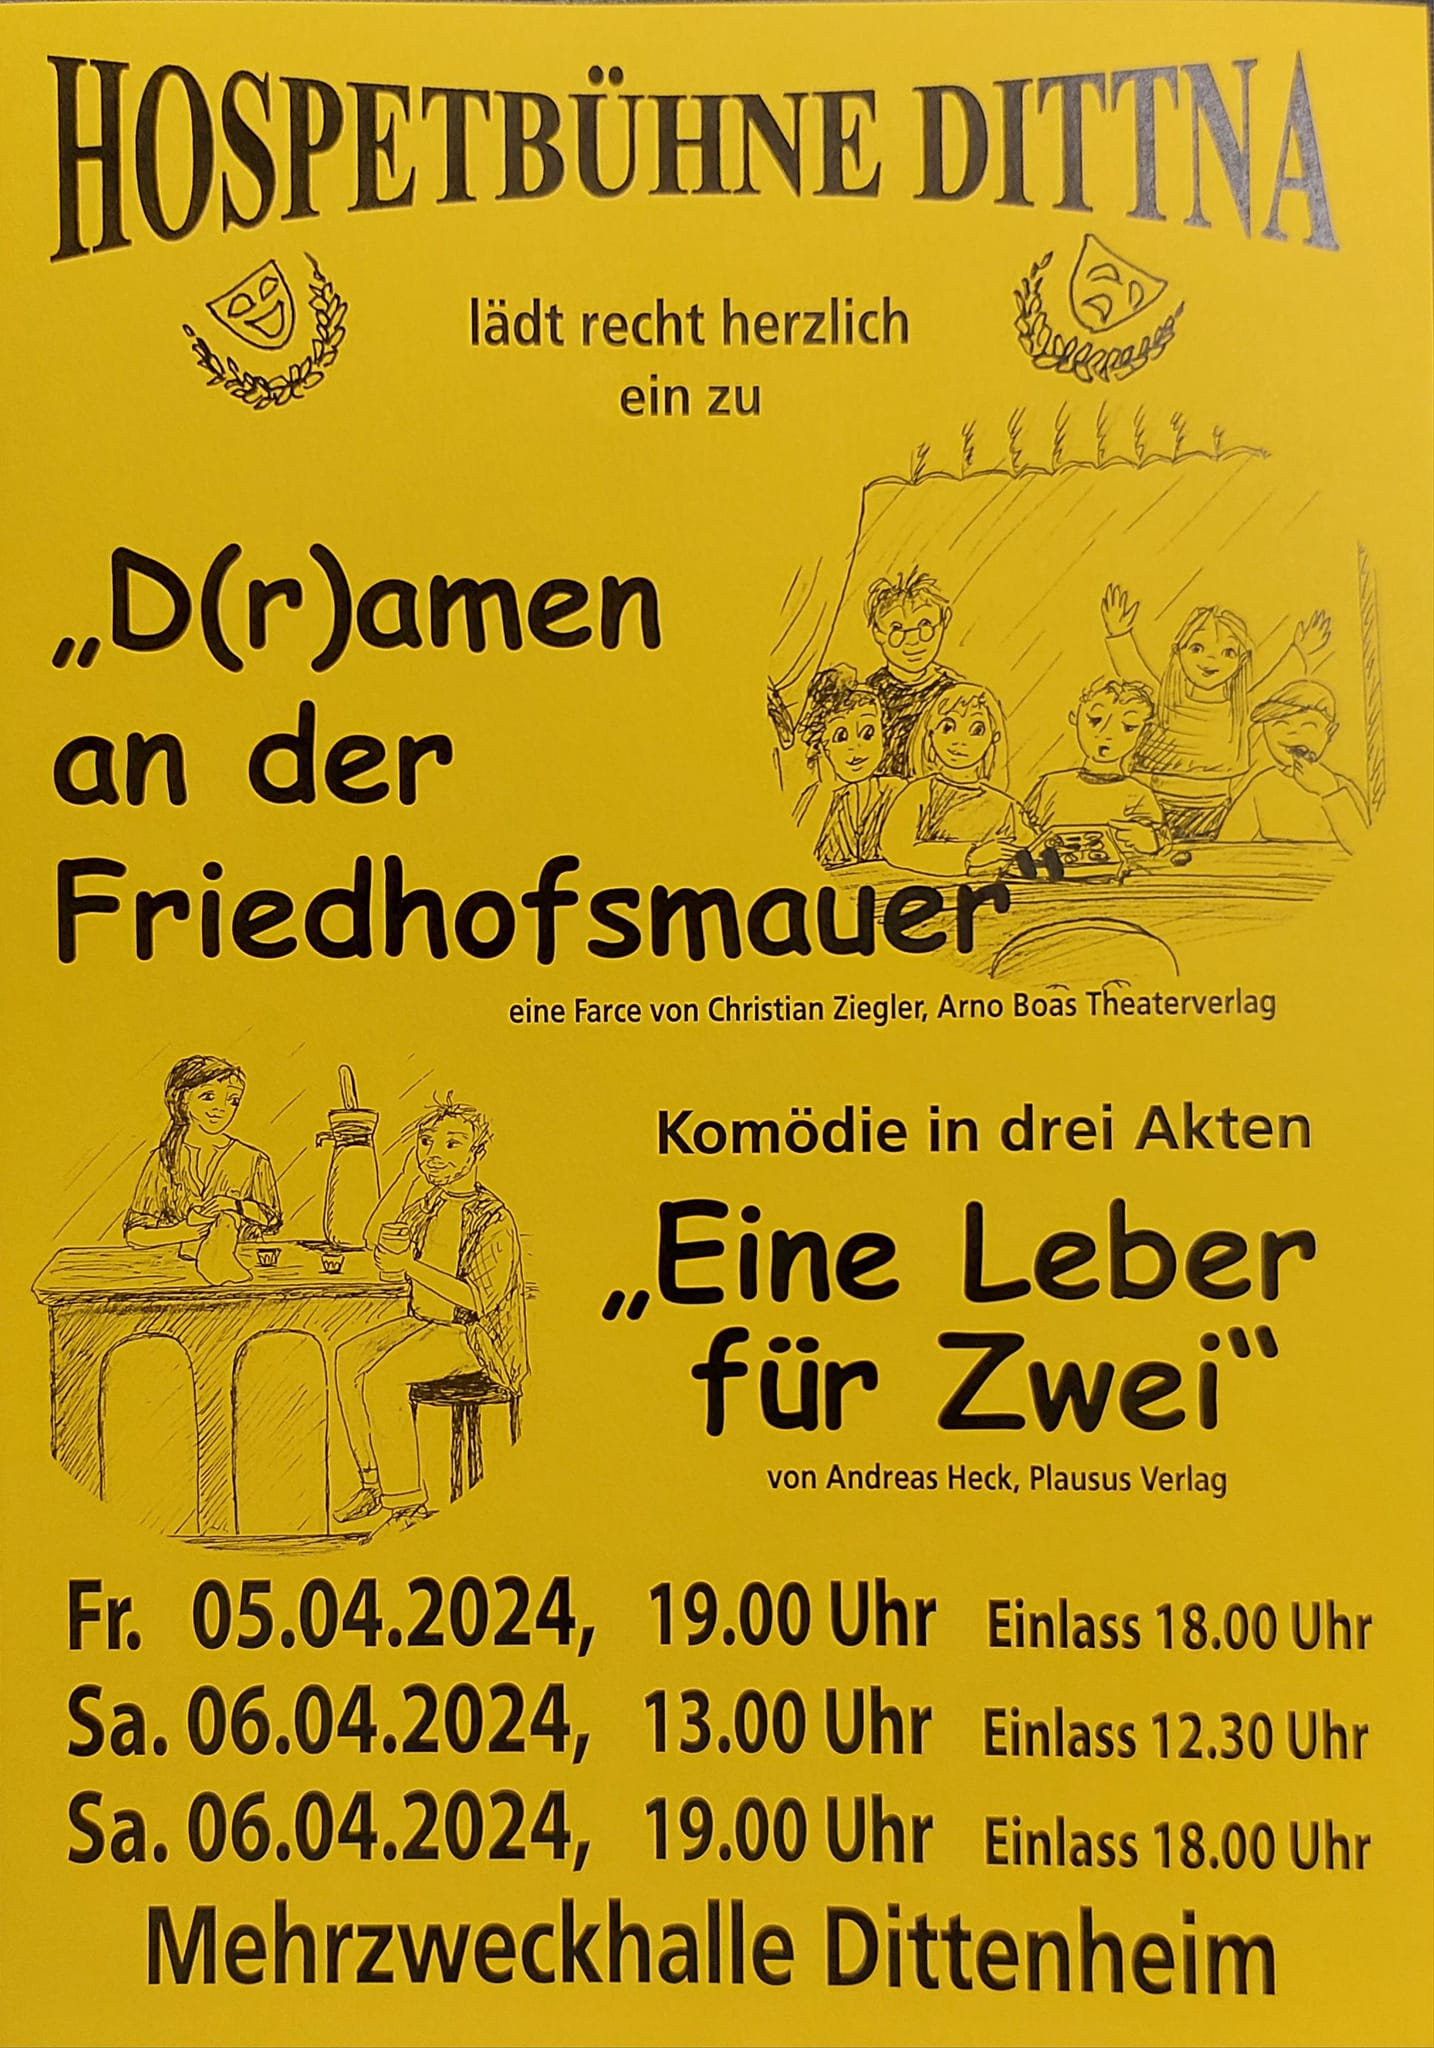 Plakat der Hospetbühne Dittenheim zu "Eine Leber für Zwei"